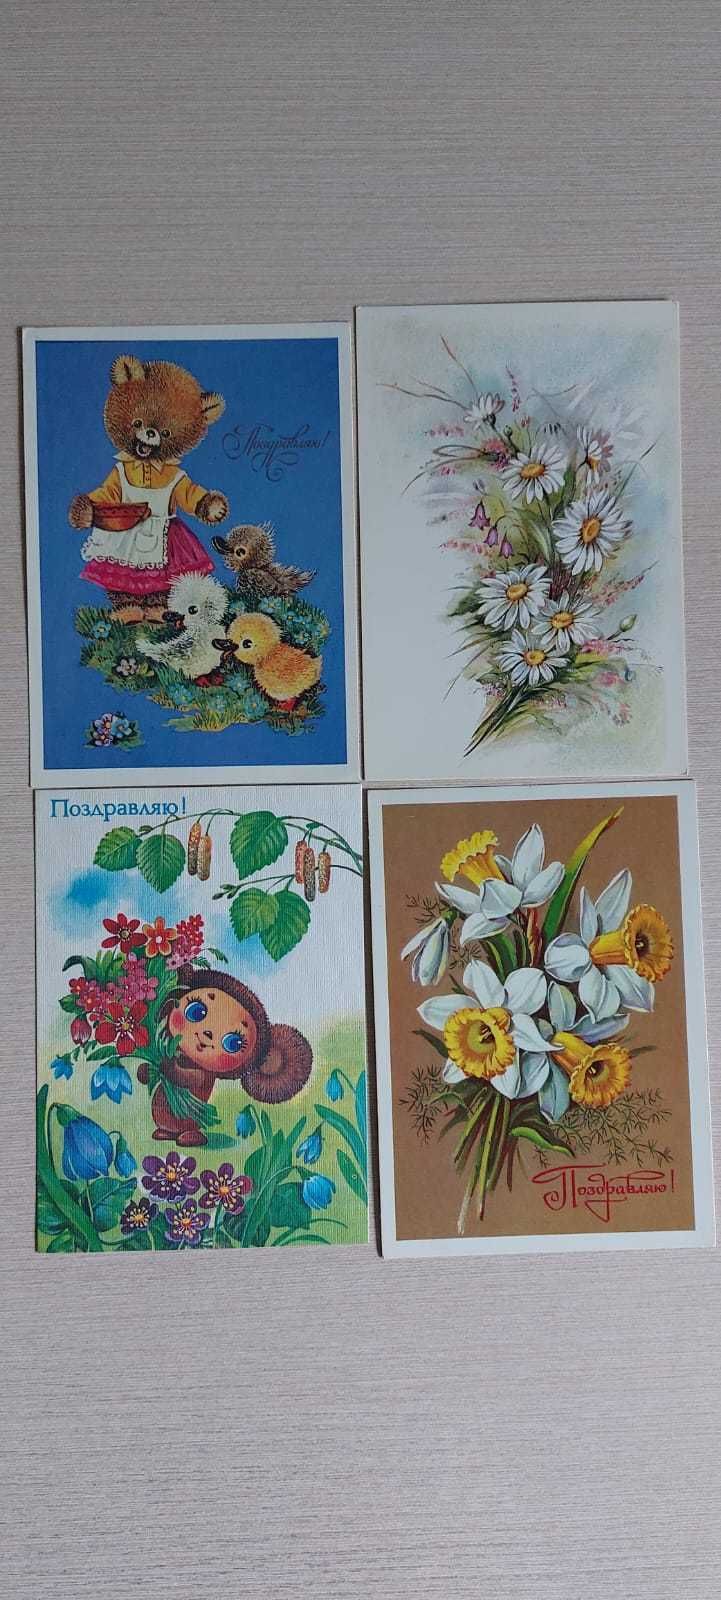 Советские открытки. Новые.